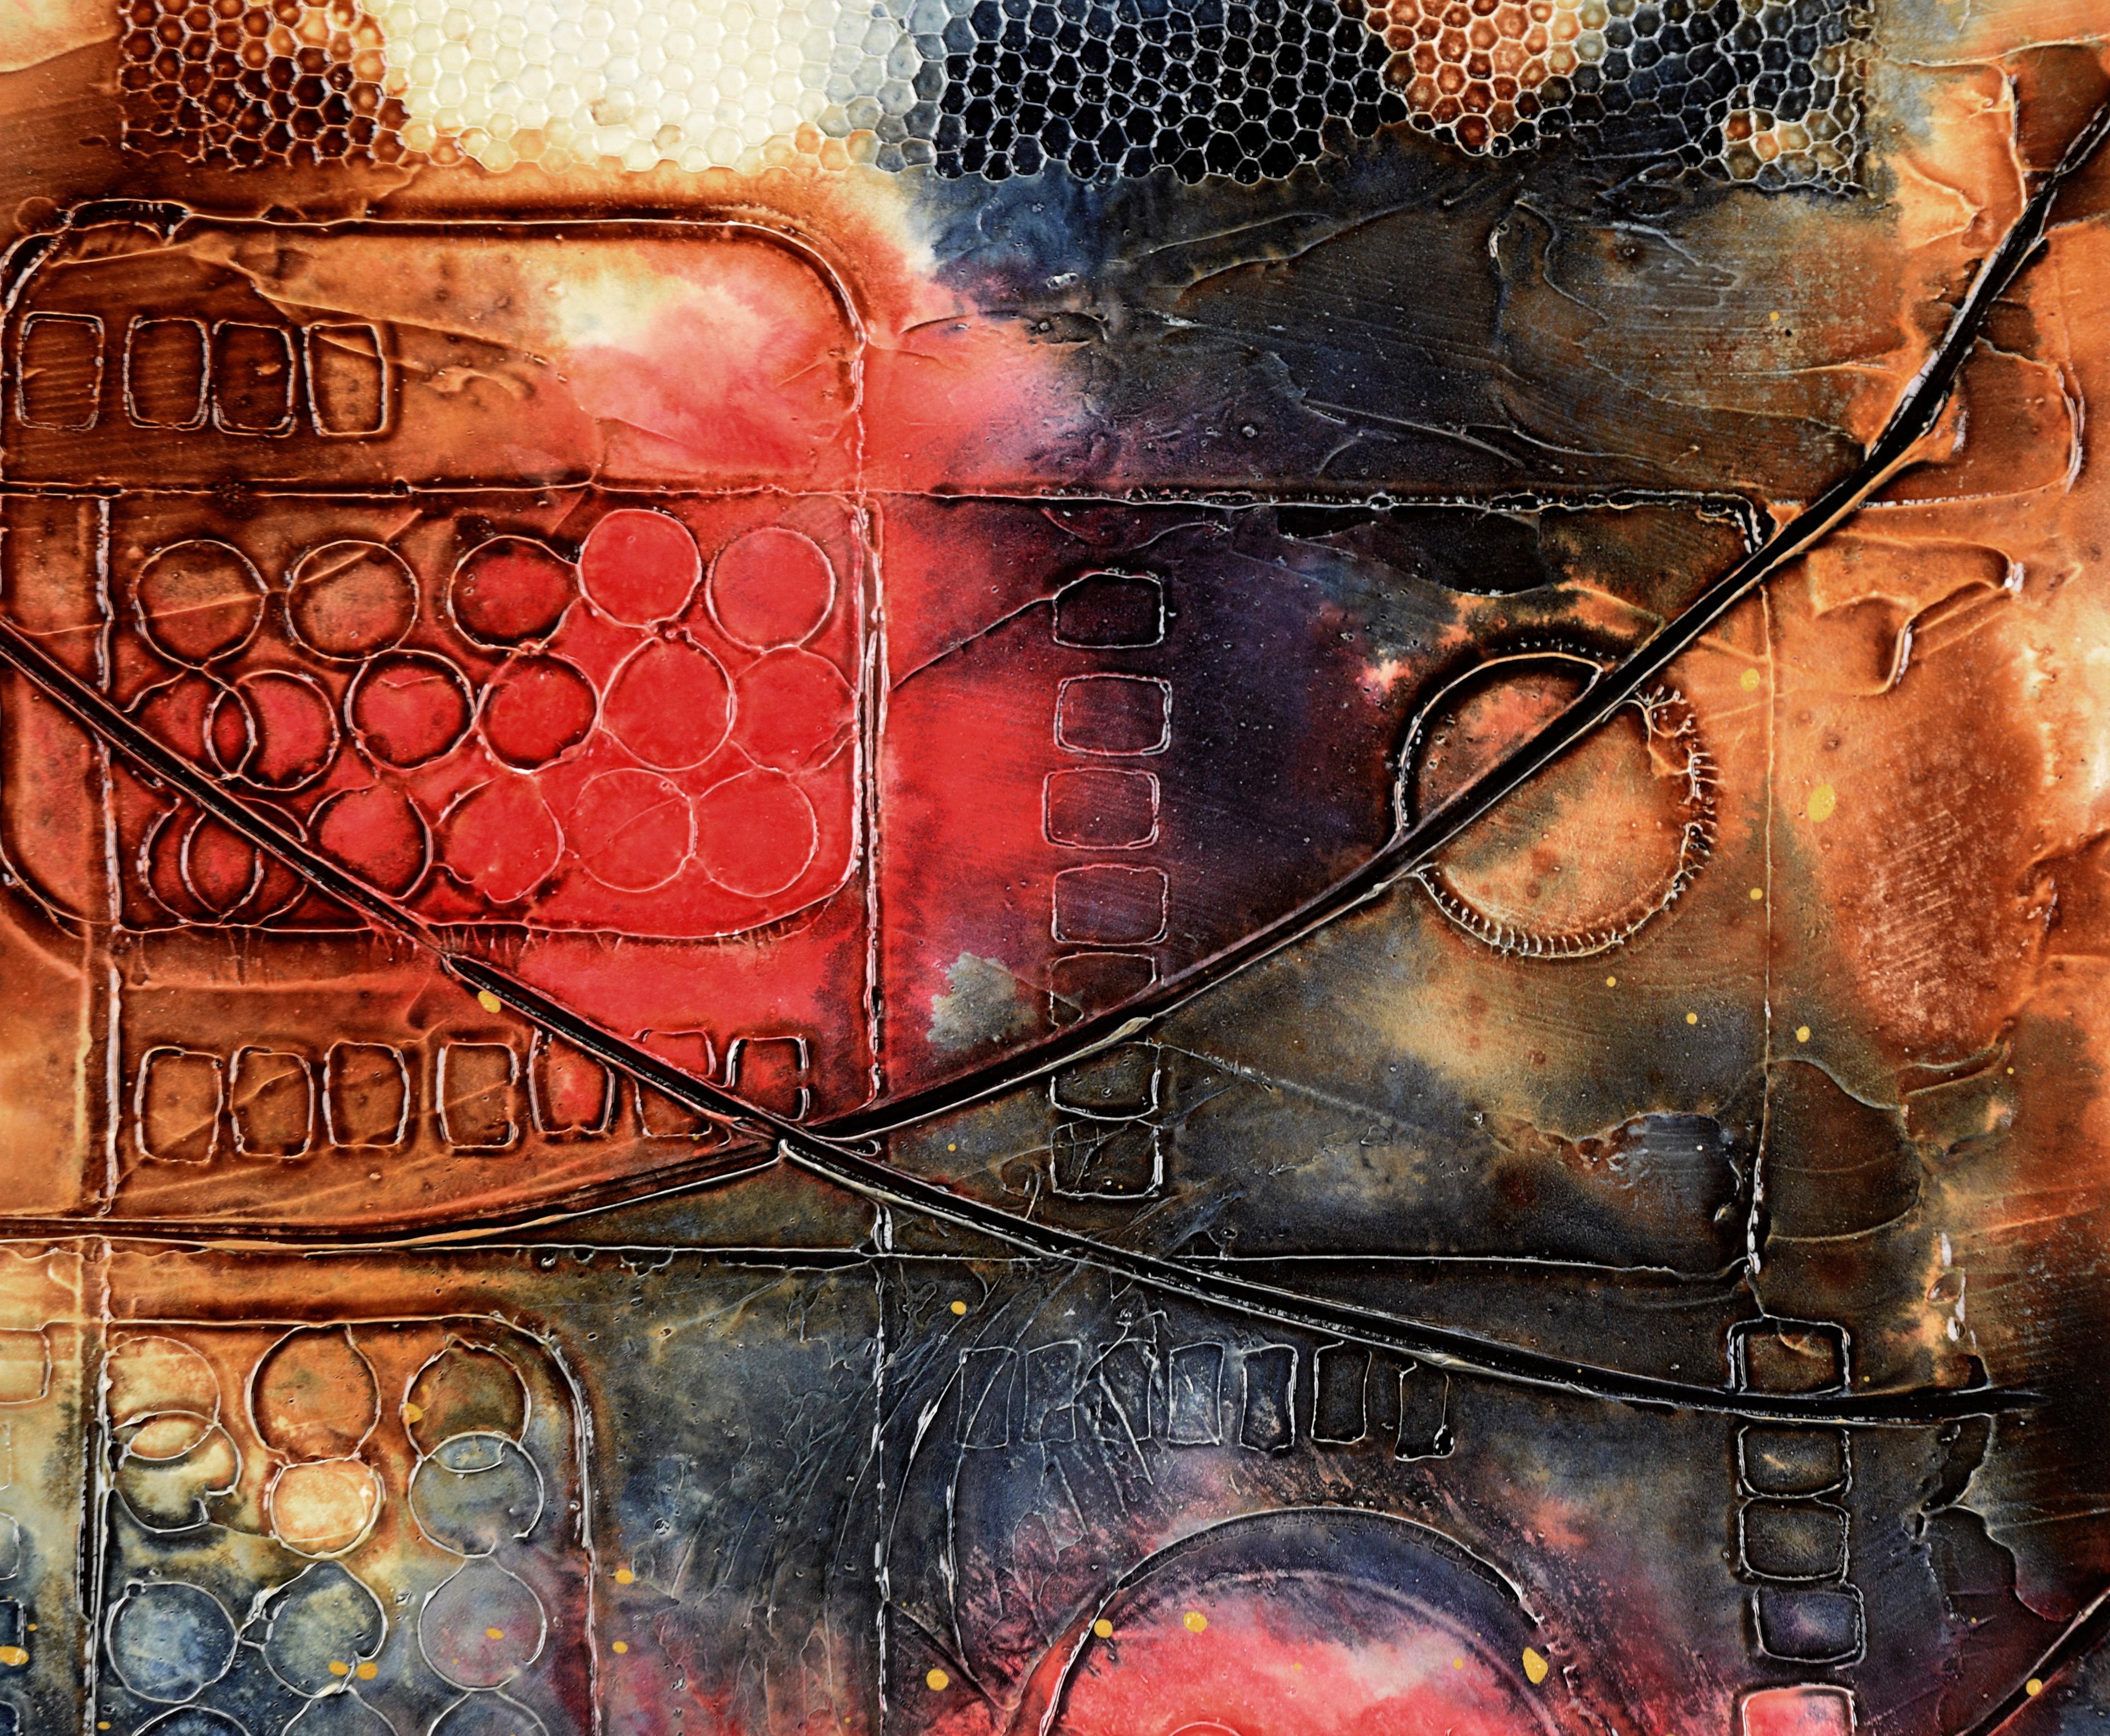 Texturierte abstrakte expressionistische Komposition in Acryl auf Karton

Strukturierte und detaillierte abstrakte Komposition von Loretta Burton Youngman (Amerikanerin, geb. 1943). Rote und kohleblaue Flecken befinden sich auf einem gelben und